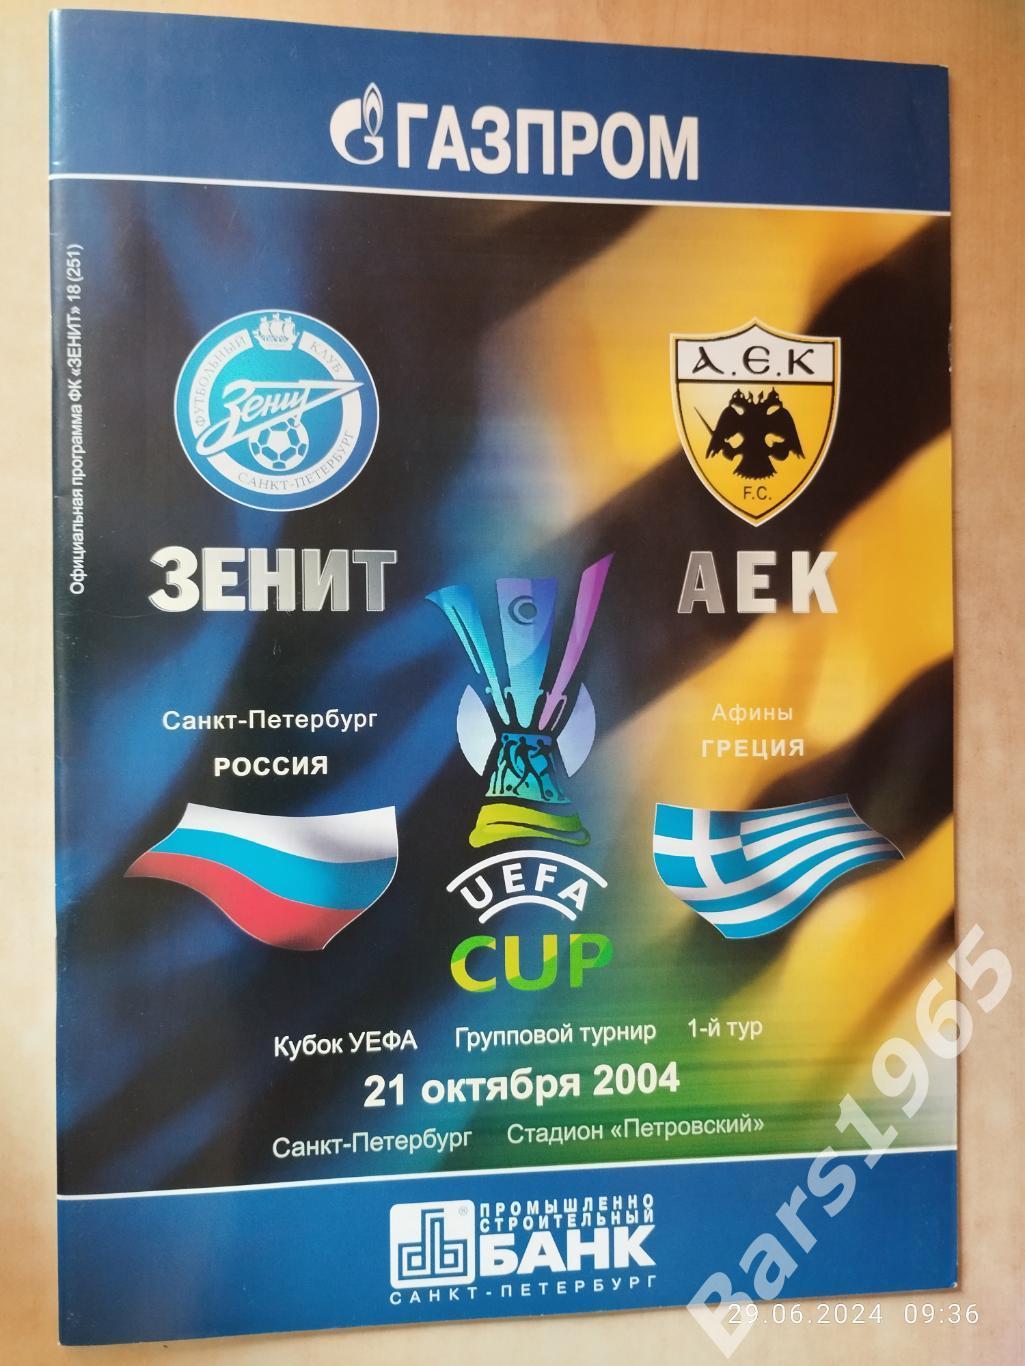 Зенит Санкт-Петербург - АЕК Греция 2004